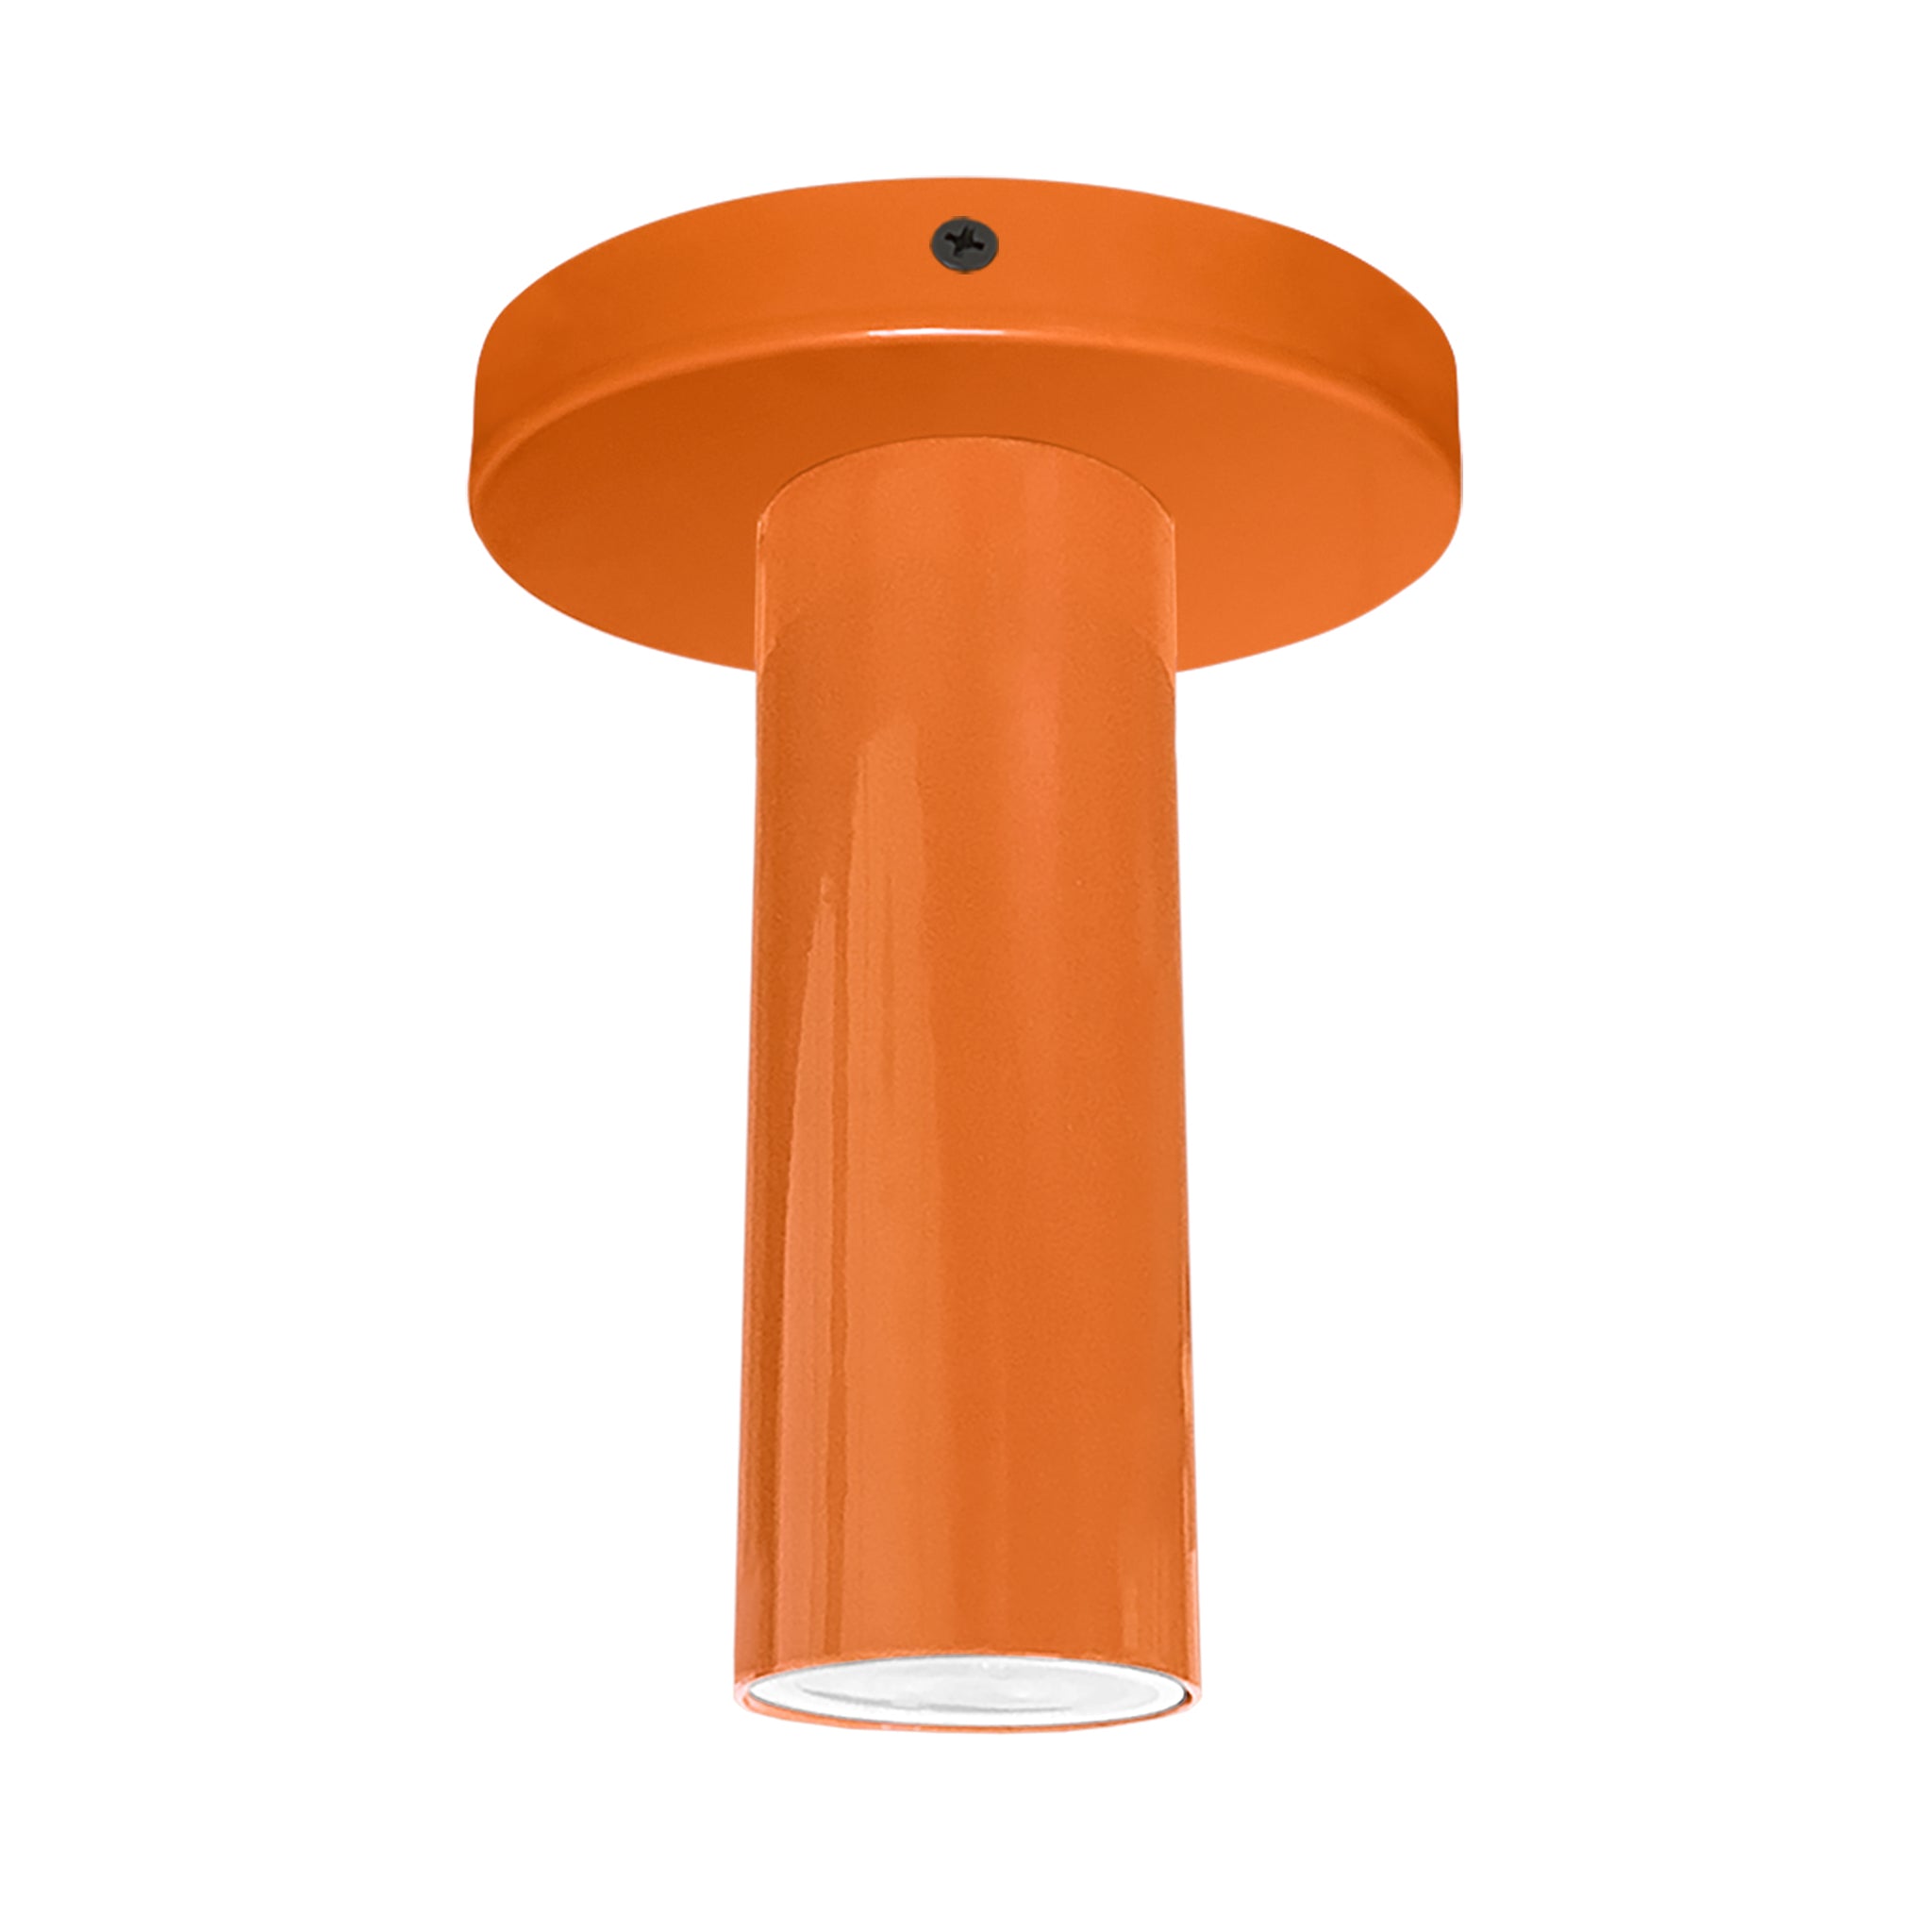 Black and orange color Reader flush mount Dutton Brown lighting